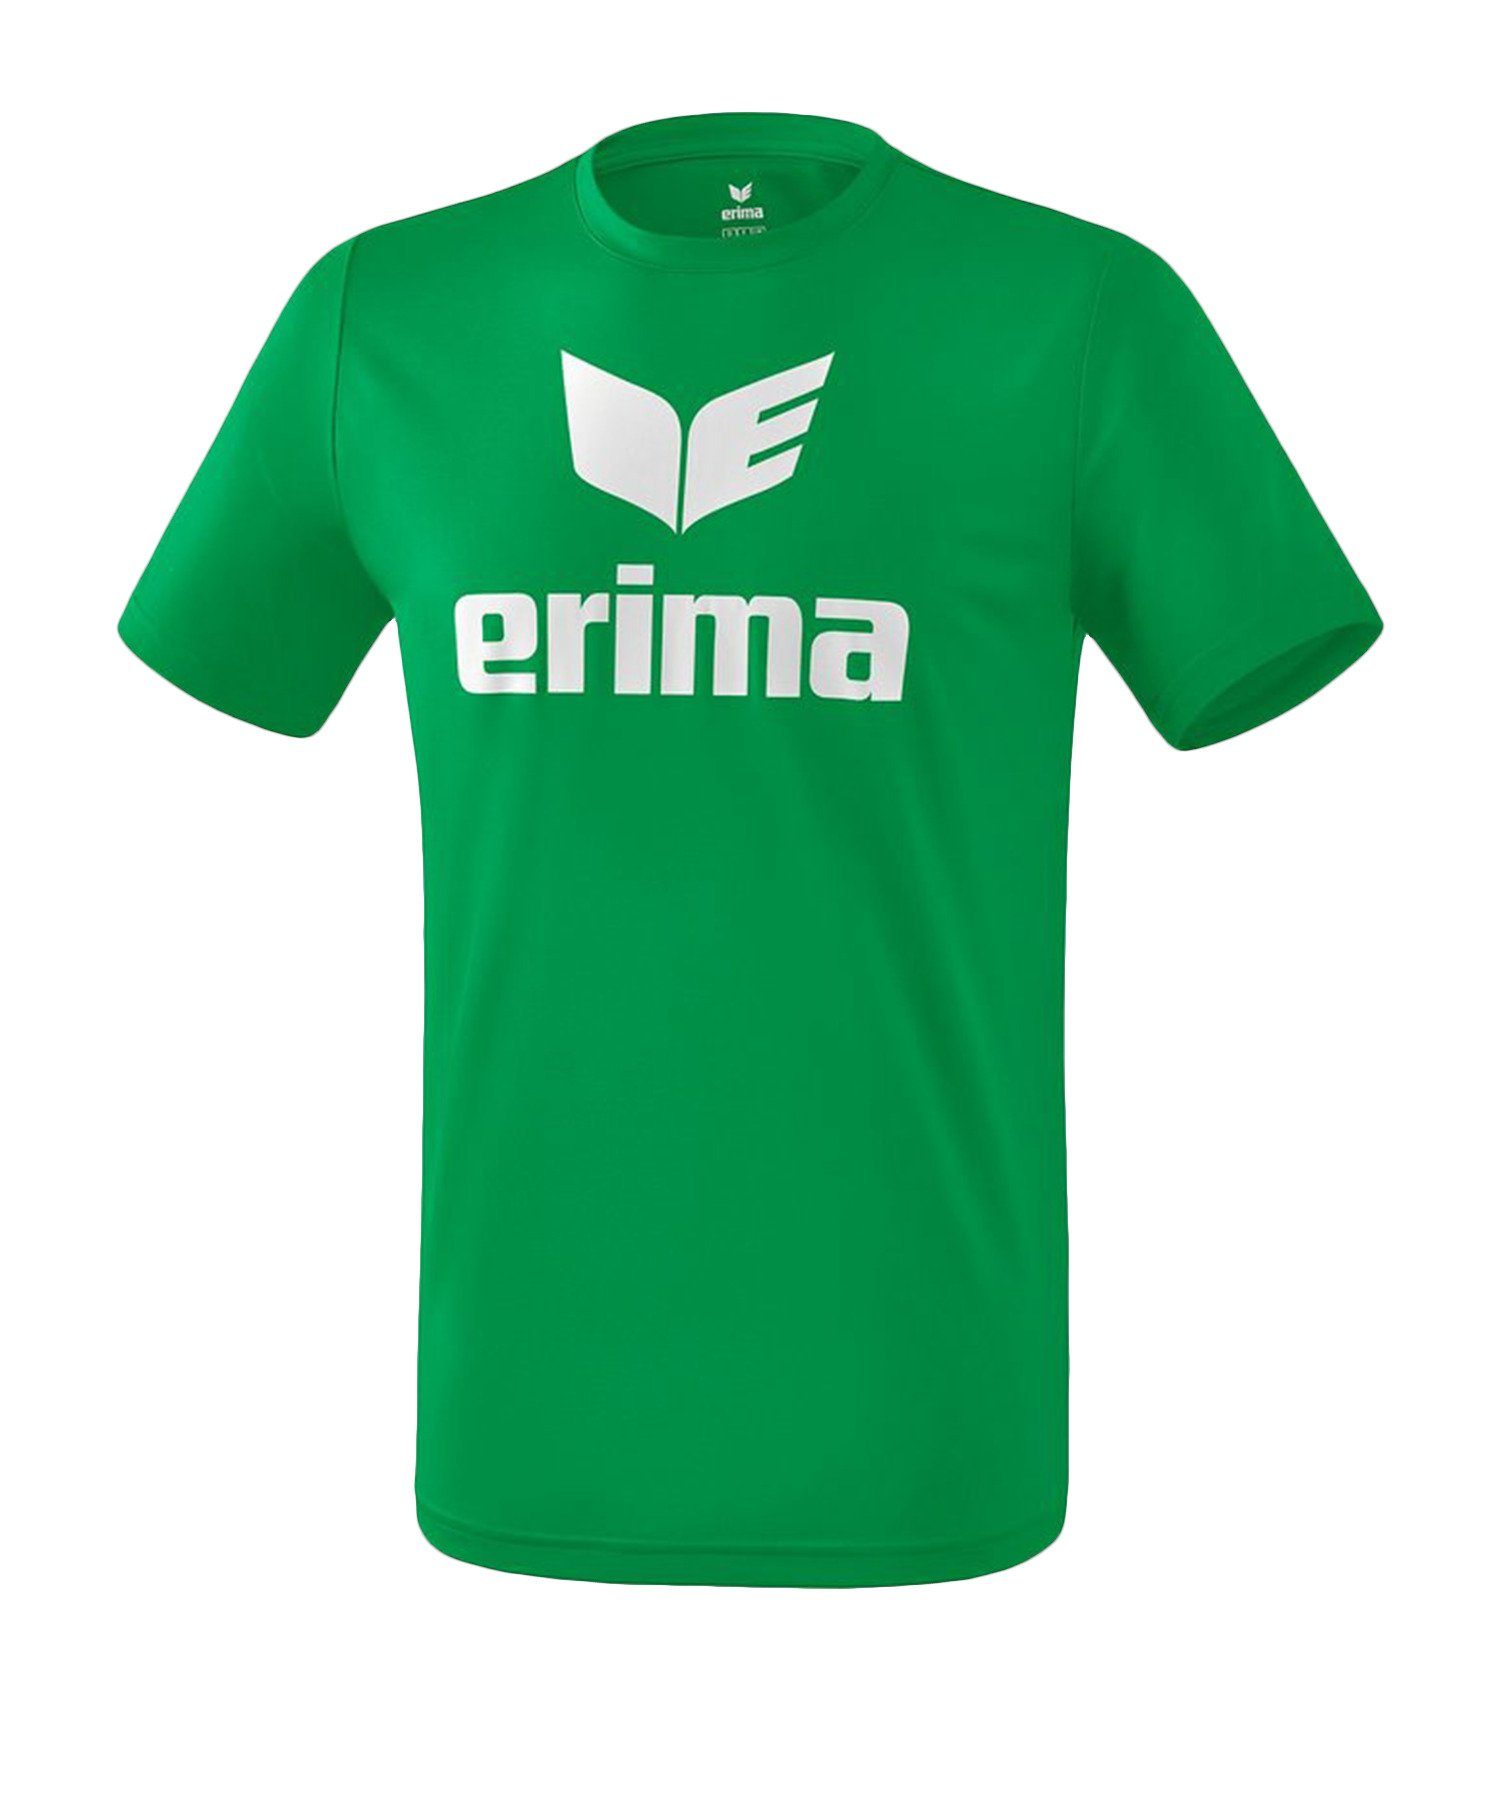 GruenWeiss Funktions T-Shirt default T-Shirt Promo Erima